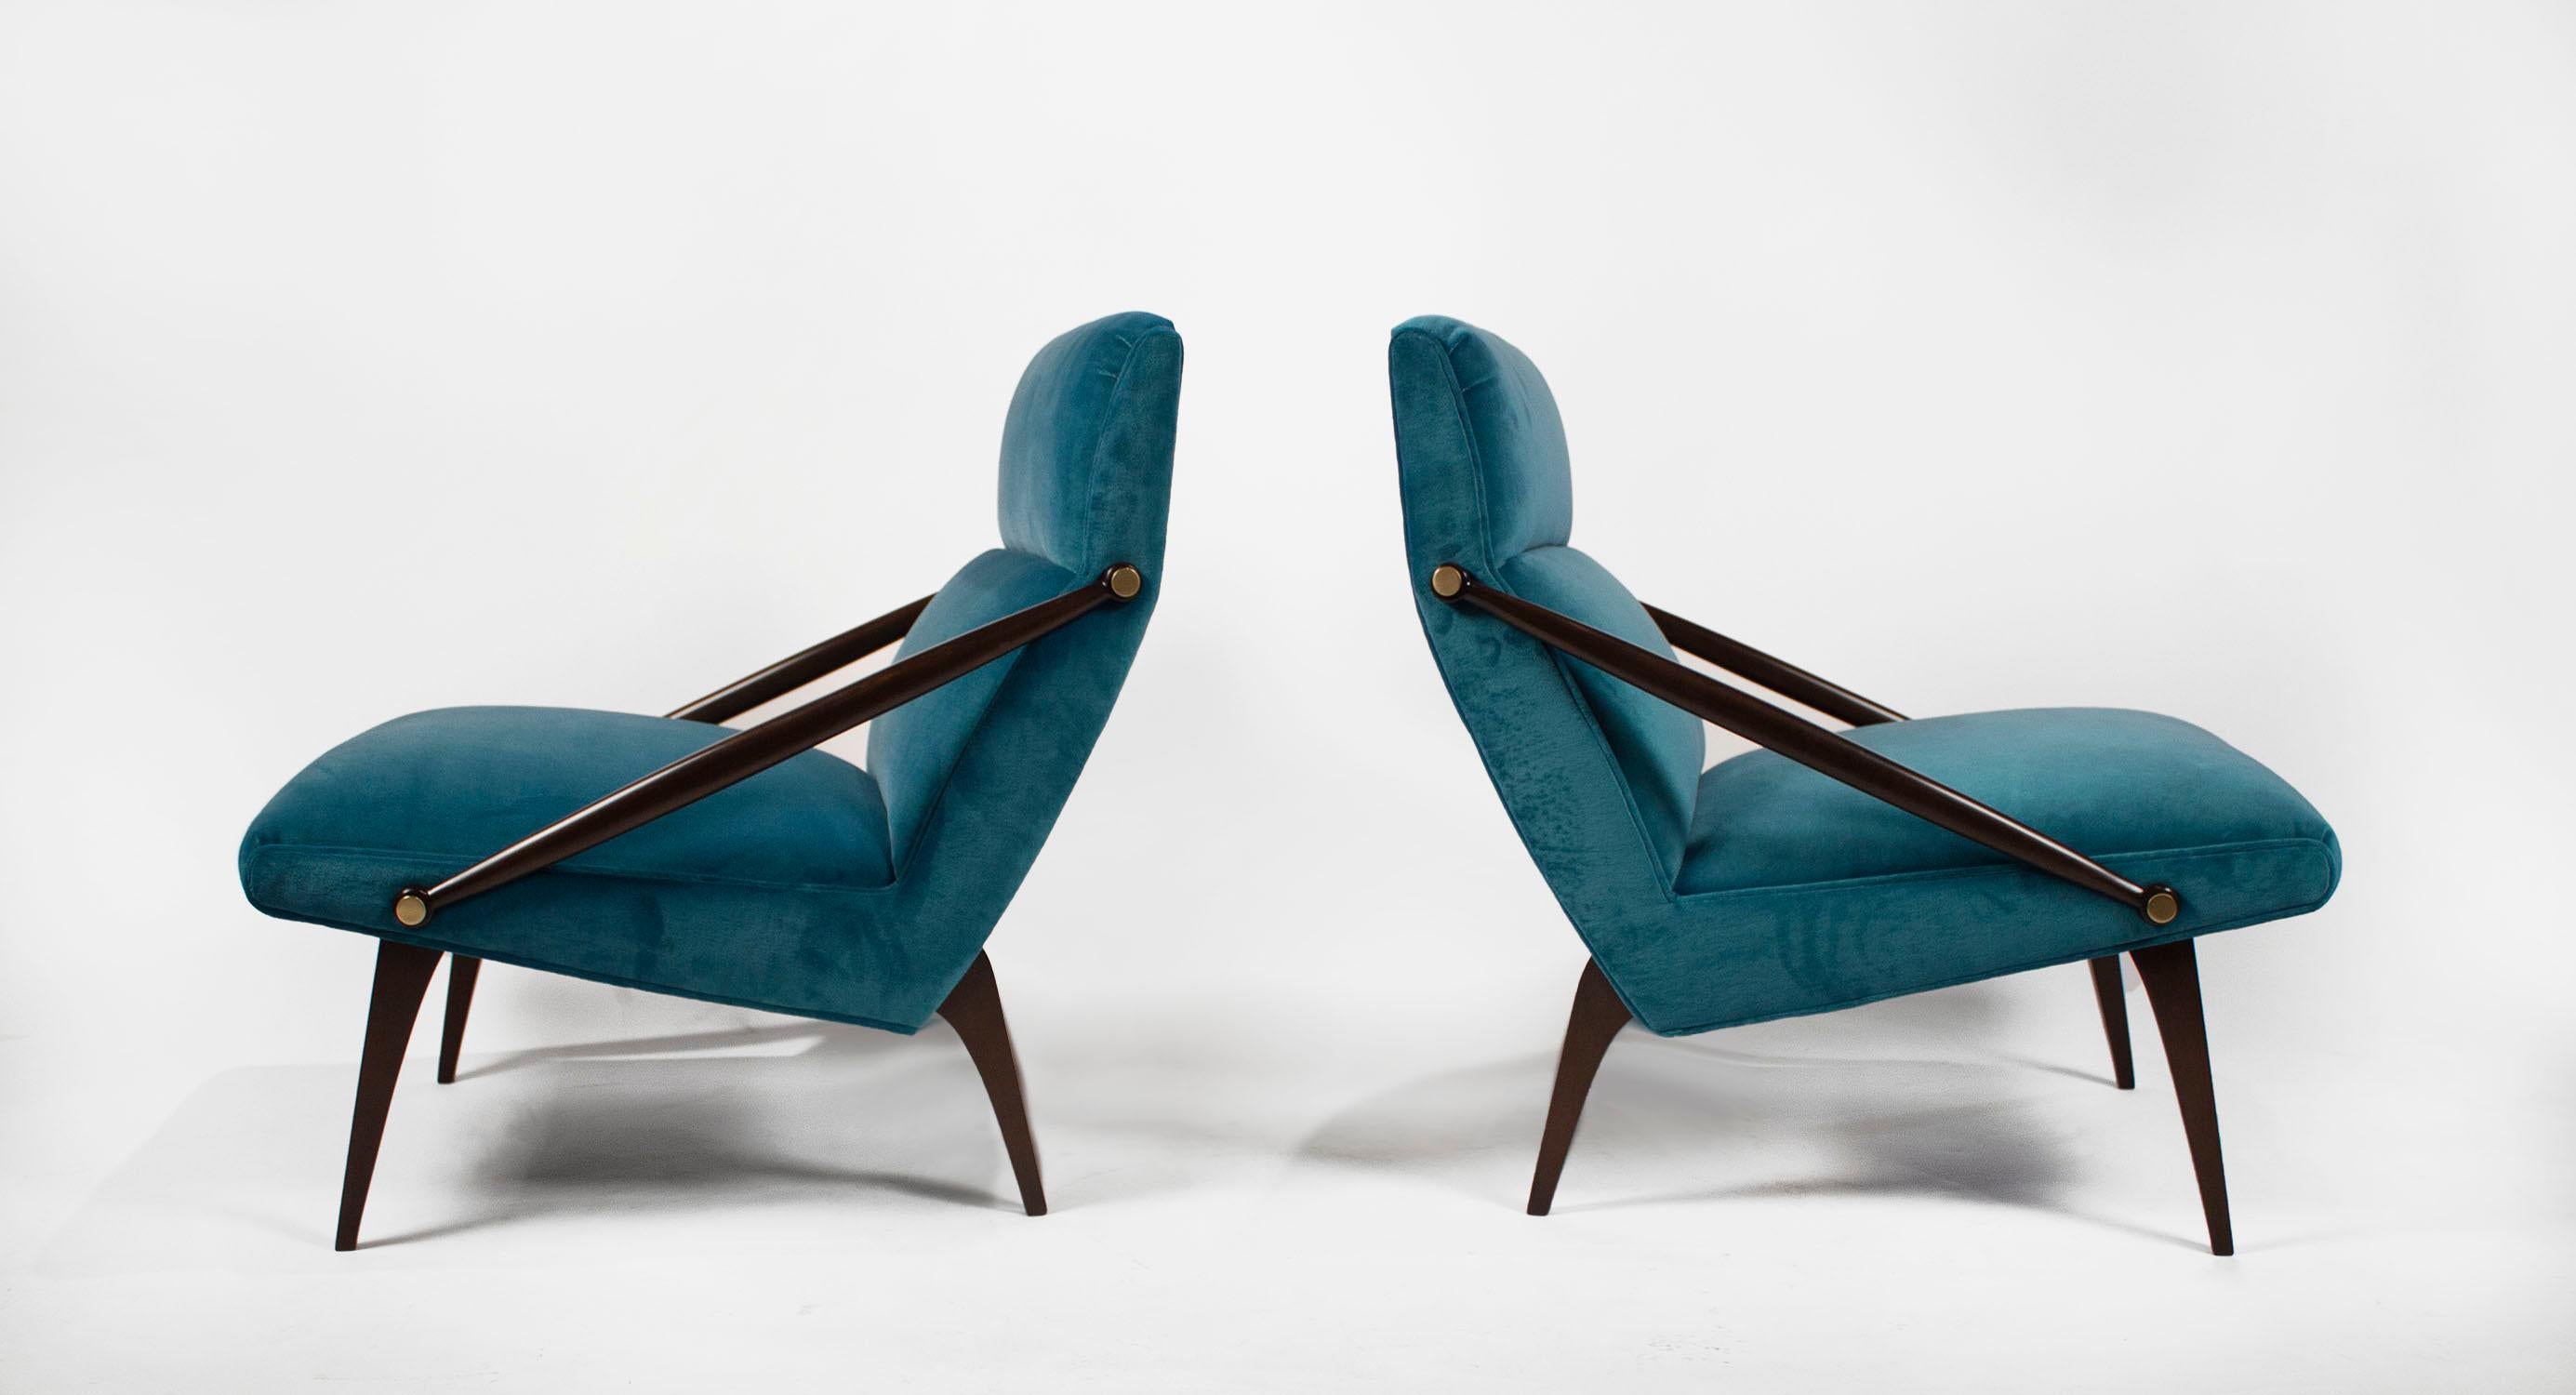 Seltenes Paar Loungesessel, entworfen vom italienischen Architekten Gio Ponti und hergestellt für M. Singer & Sons um 1950.
 
Exquisit restauriert nach dem höchstmöglichen Standard.